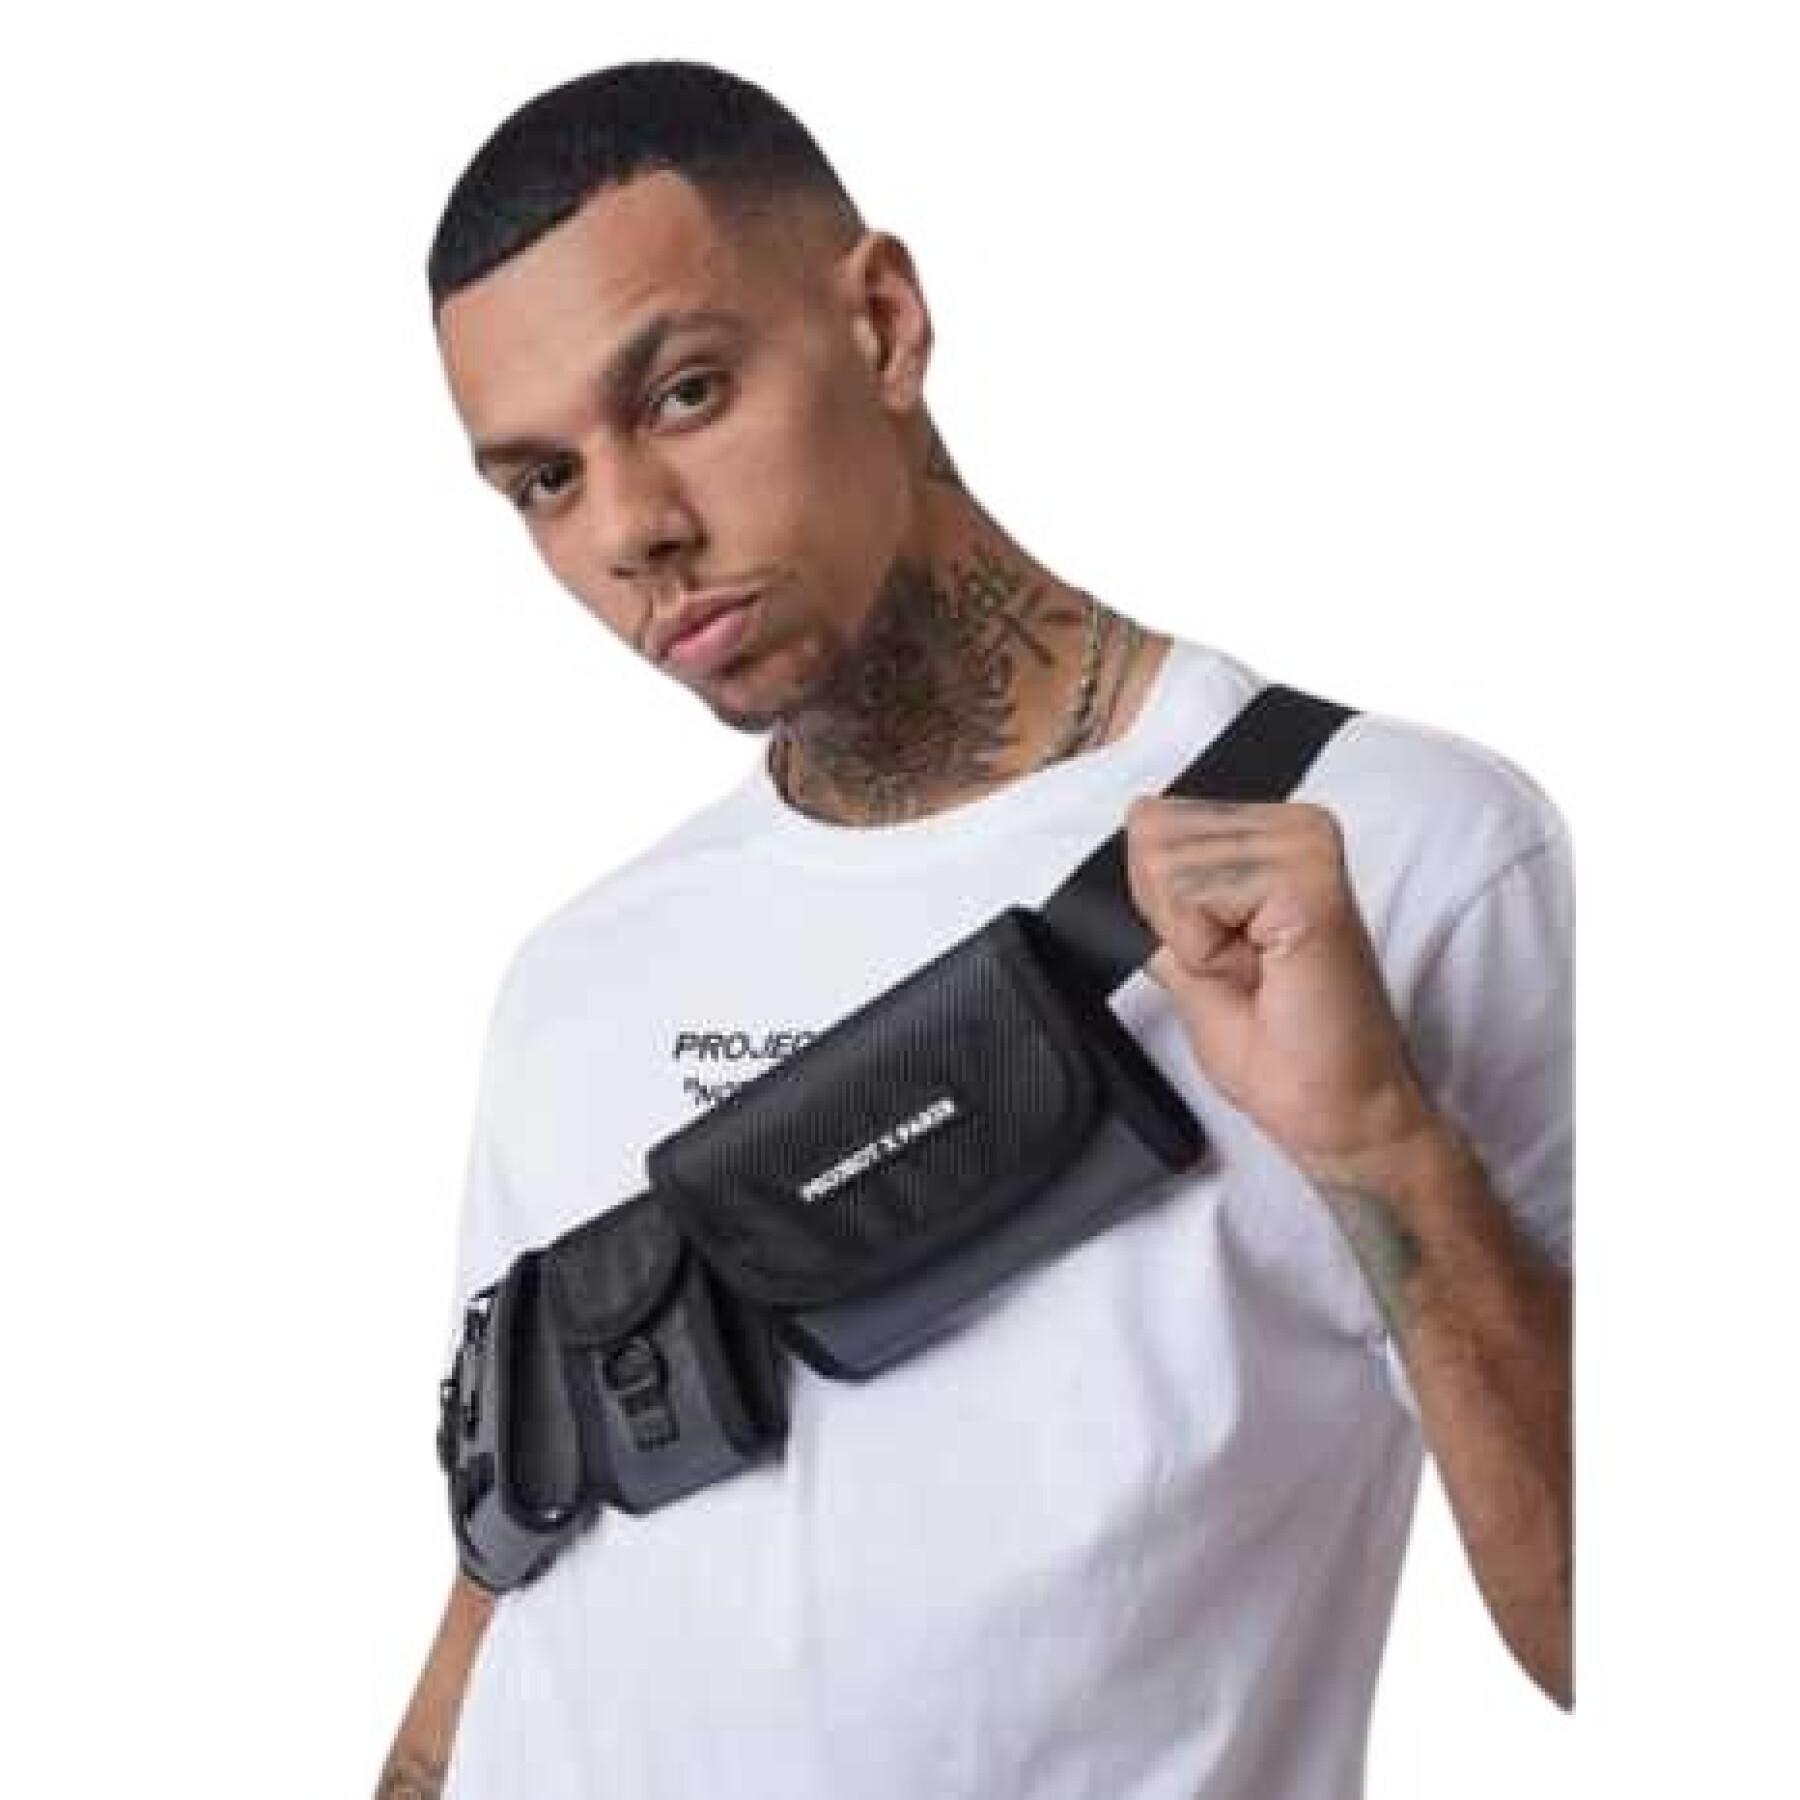 Multi-pocket shoulder belt Project X Paris